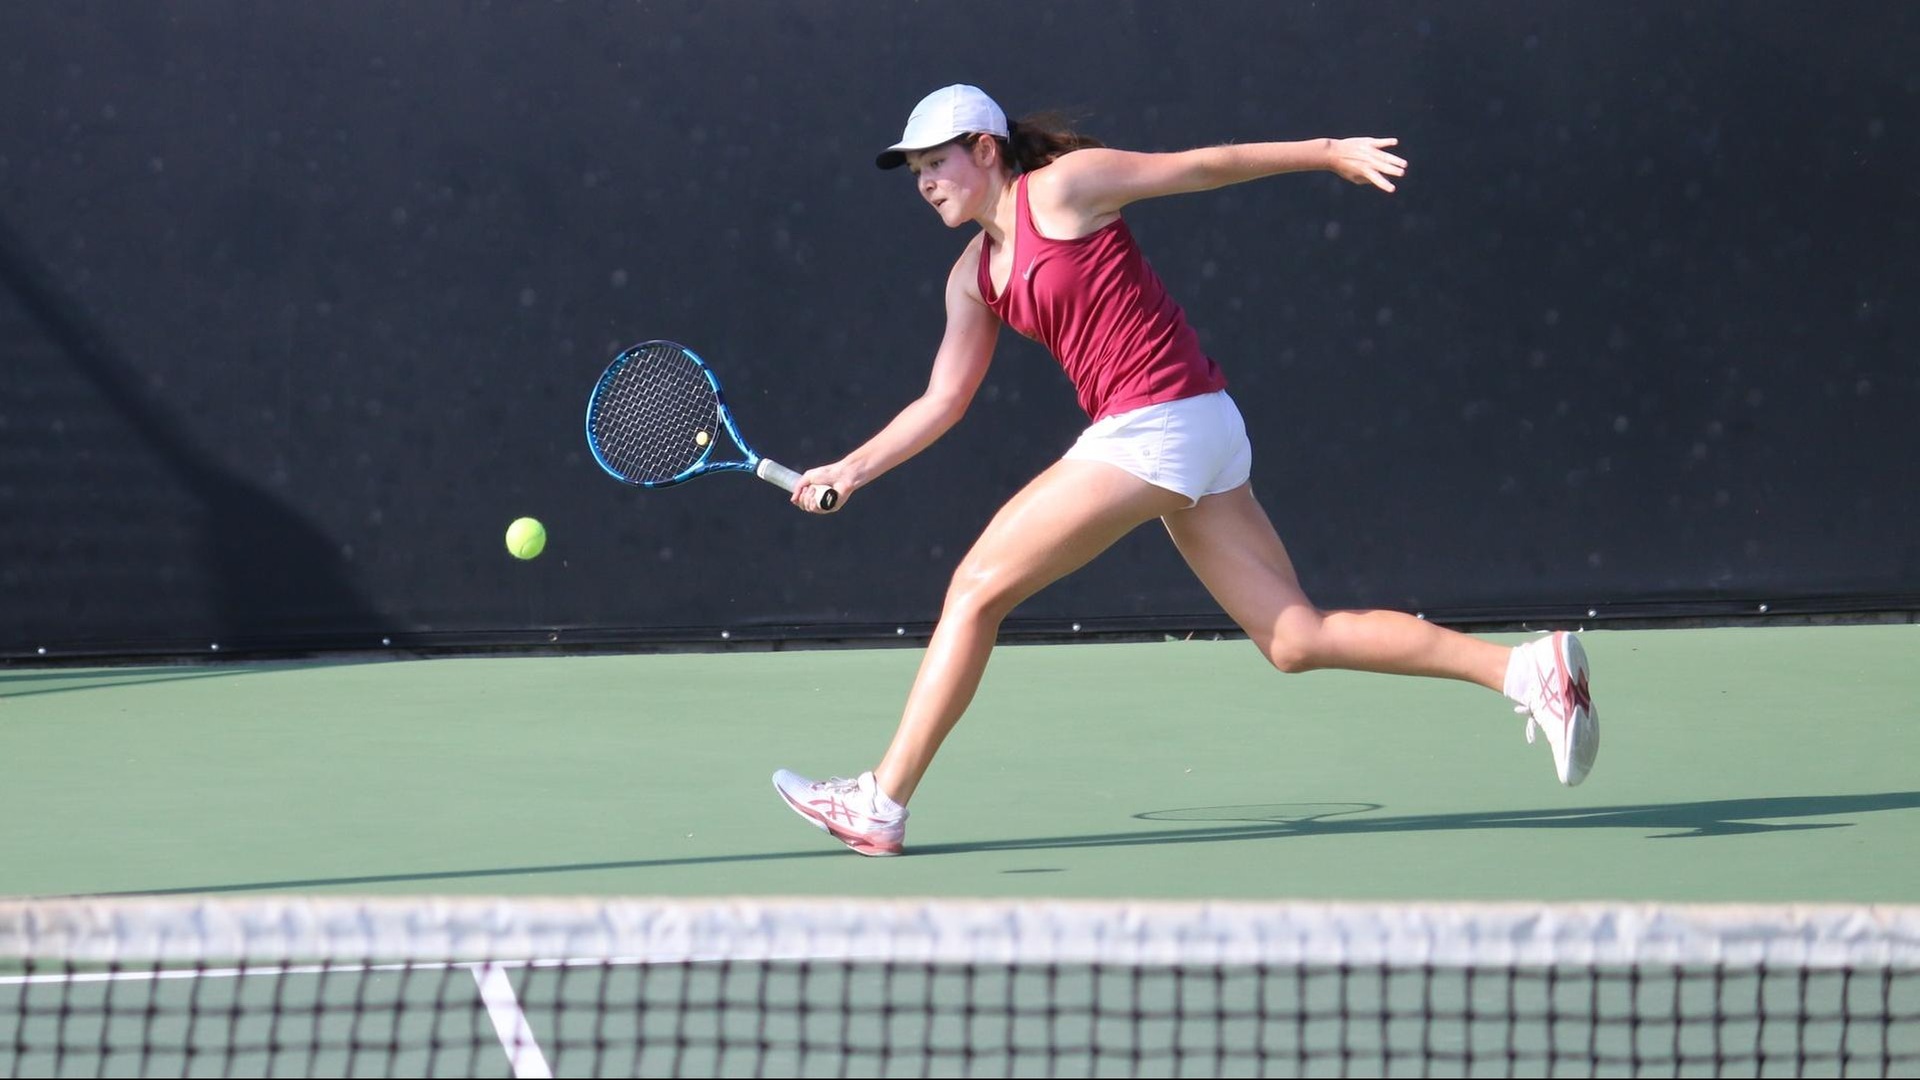 Anna Petrescu earned a 6-1, 6-2 win in her first collegiate match